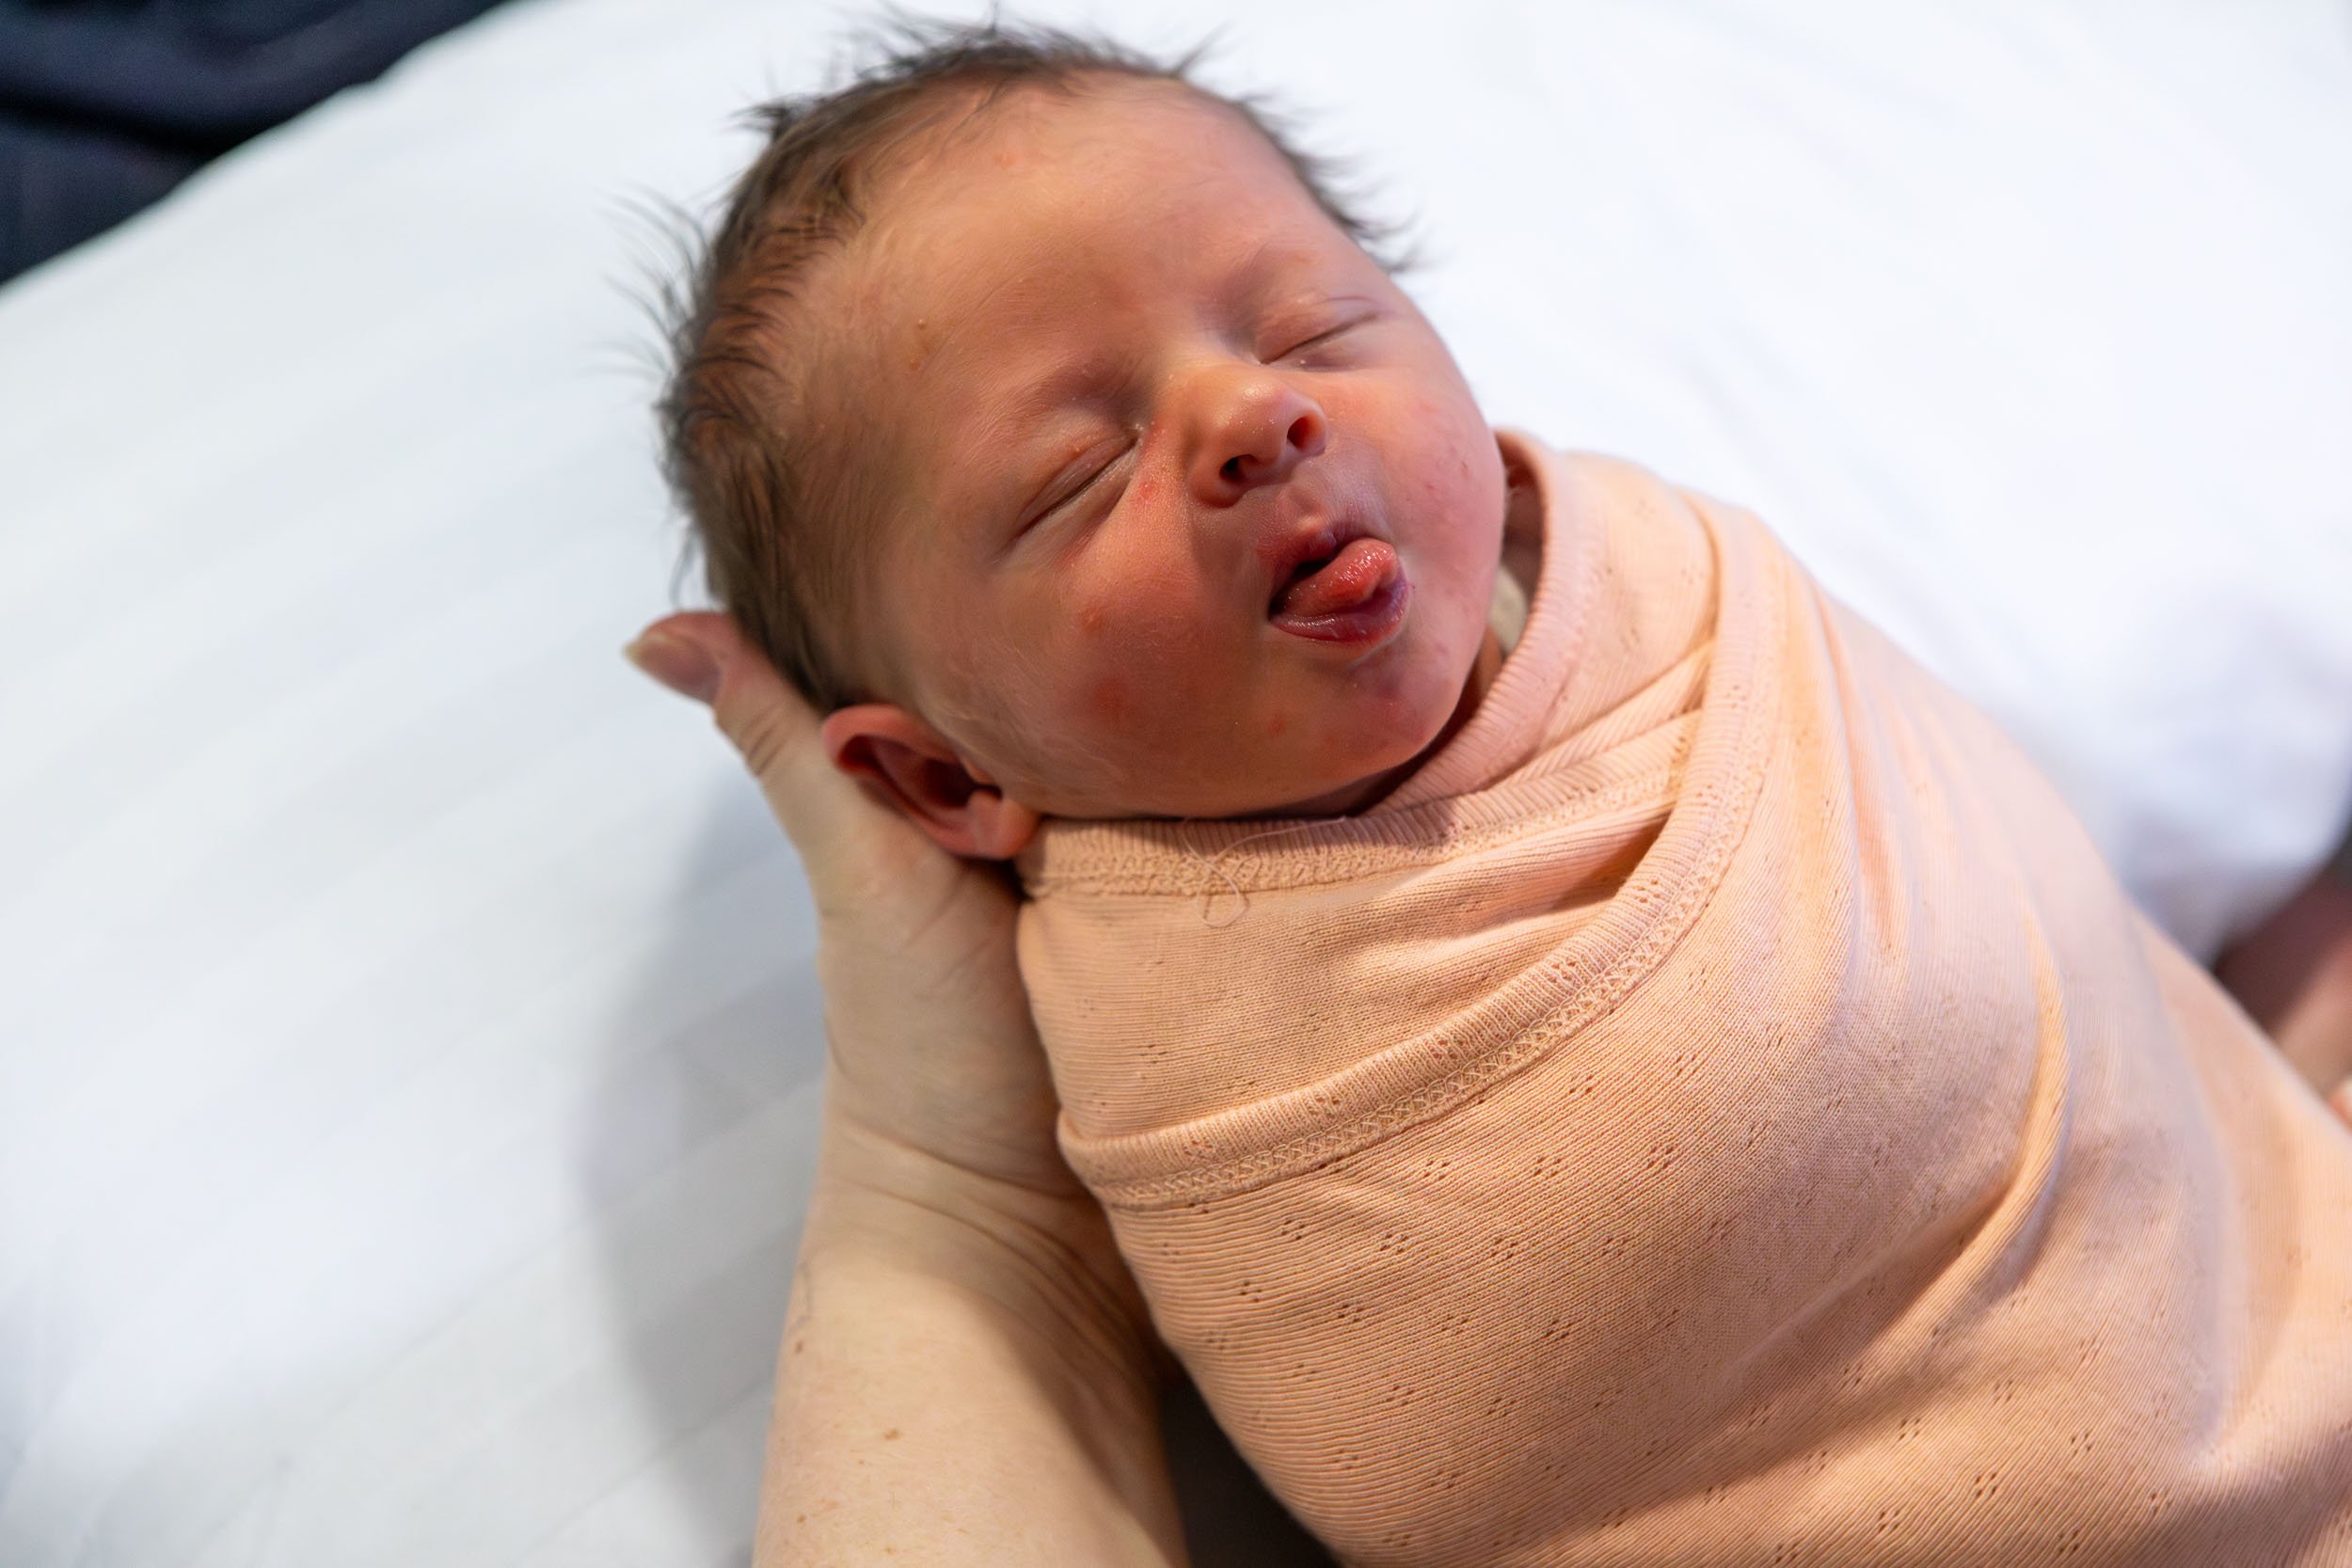  cheeky newborn baby photography 